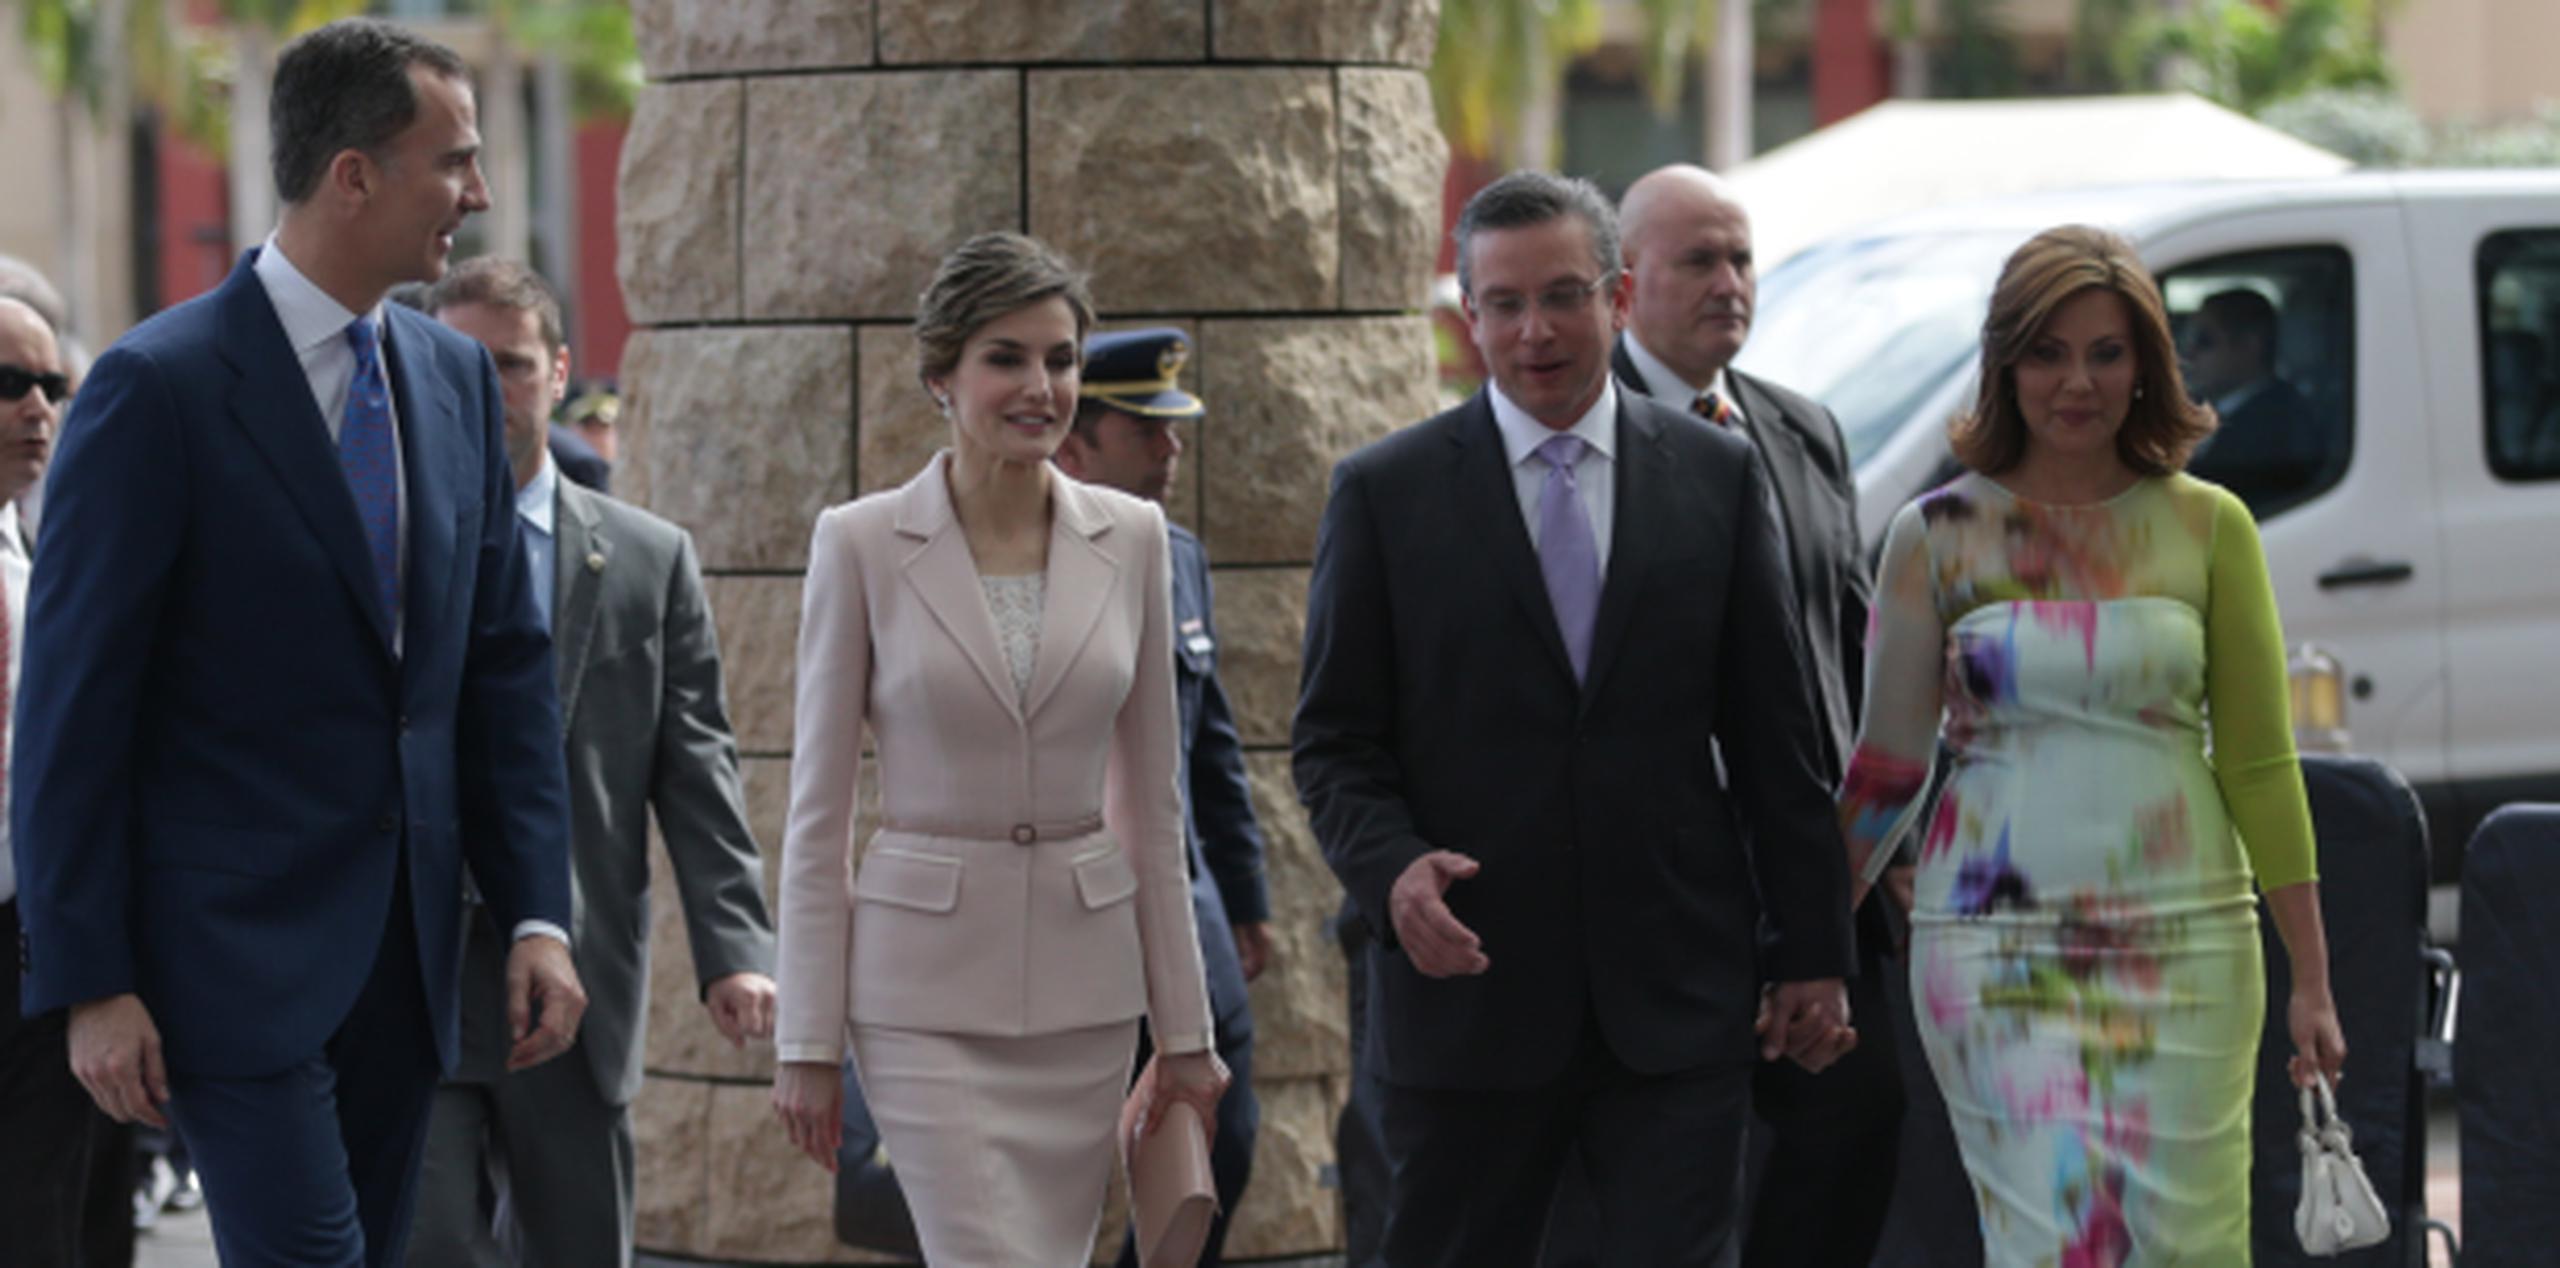 El rey Felipe VI y la reina Letizia comparten hoy con el gobernador Alejandro García Padilla y la primera dama Wilma Pastrana. (xavier.araujo@gfrmedia.com)